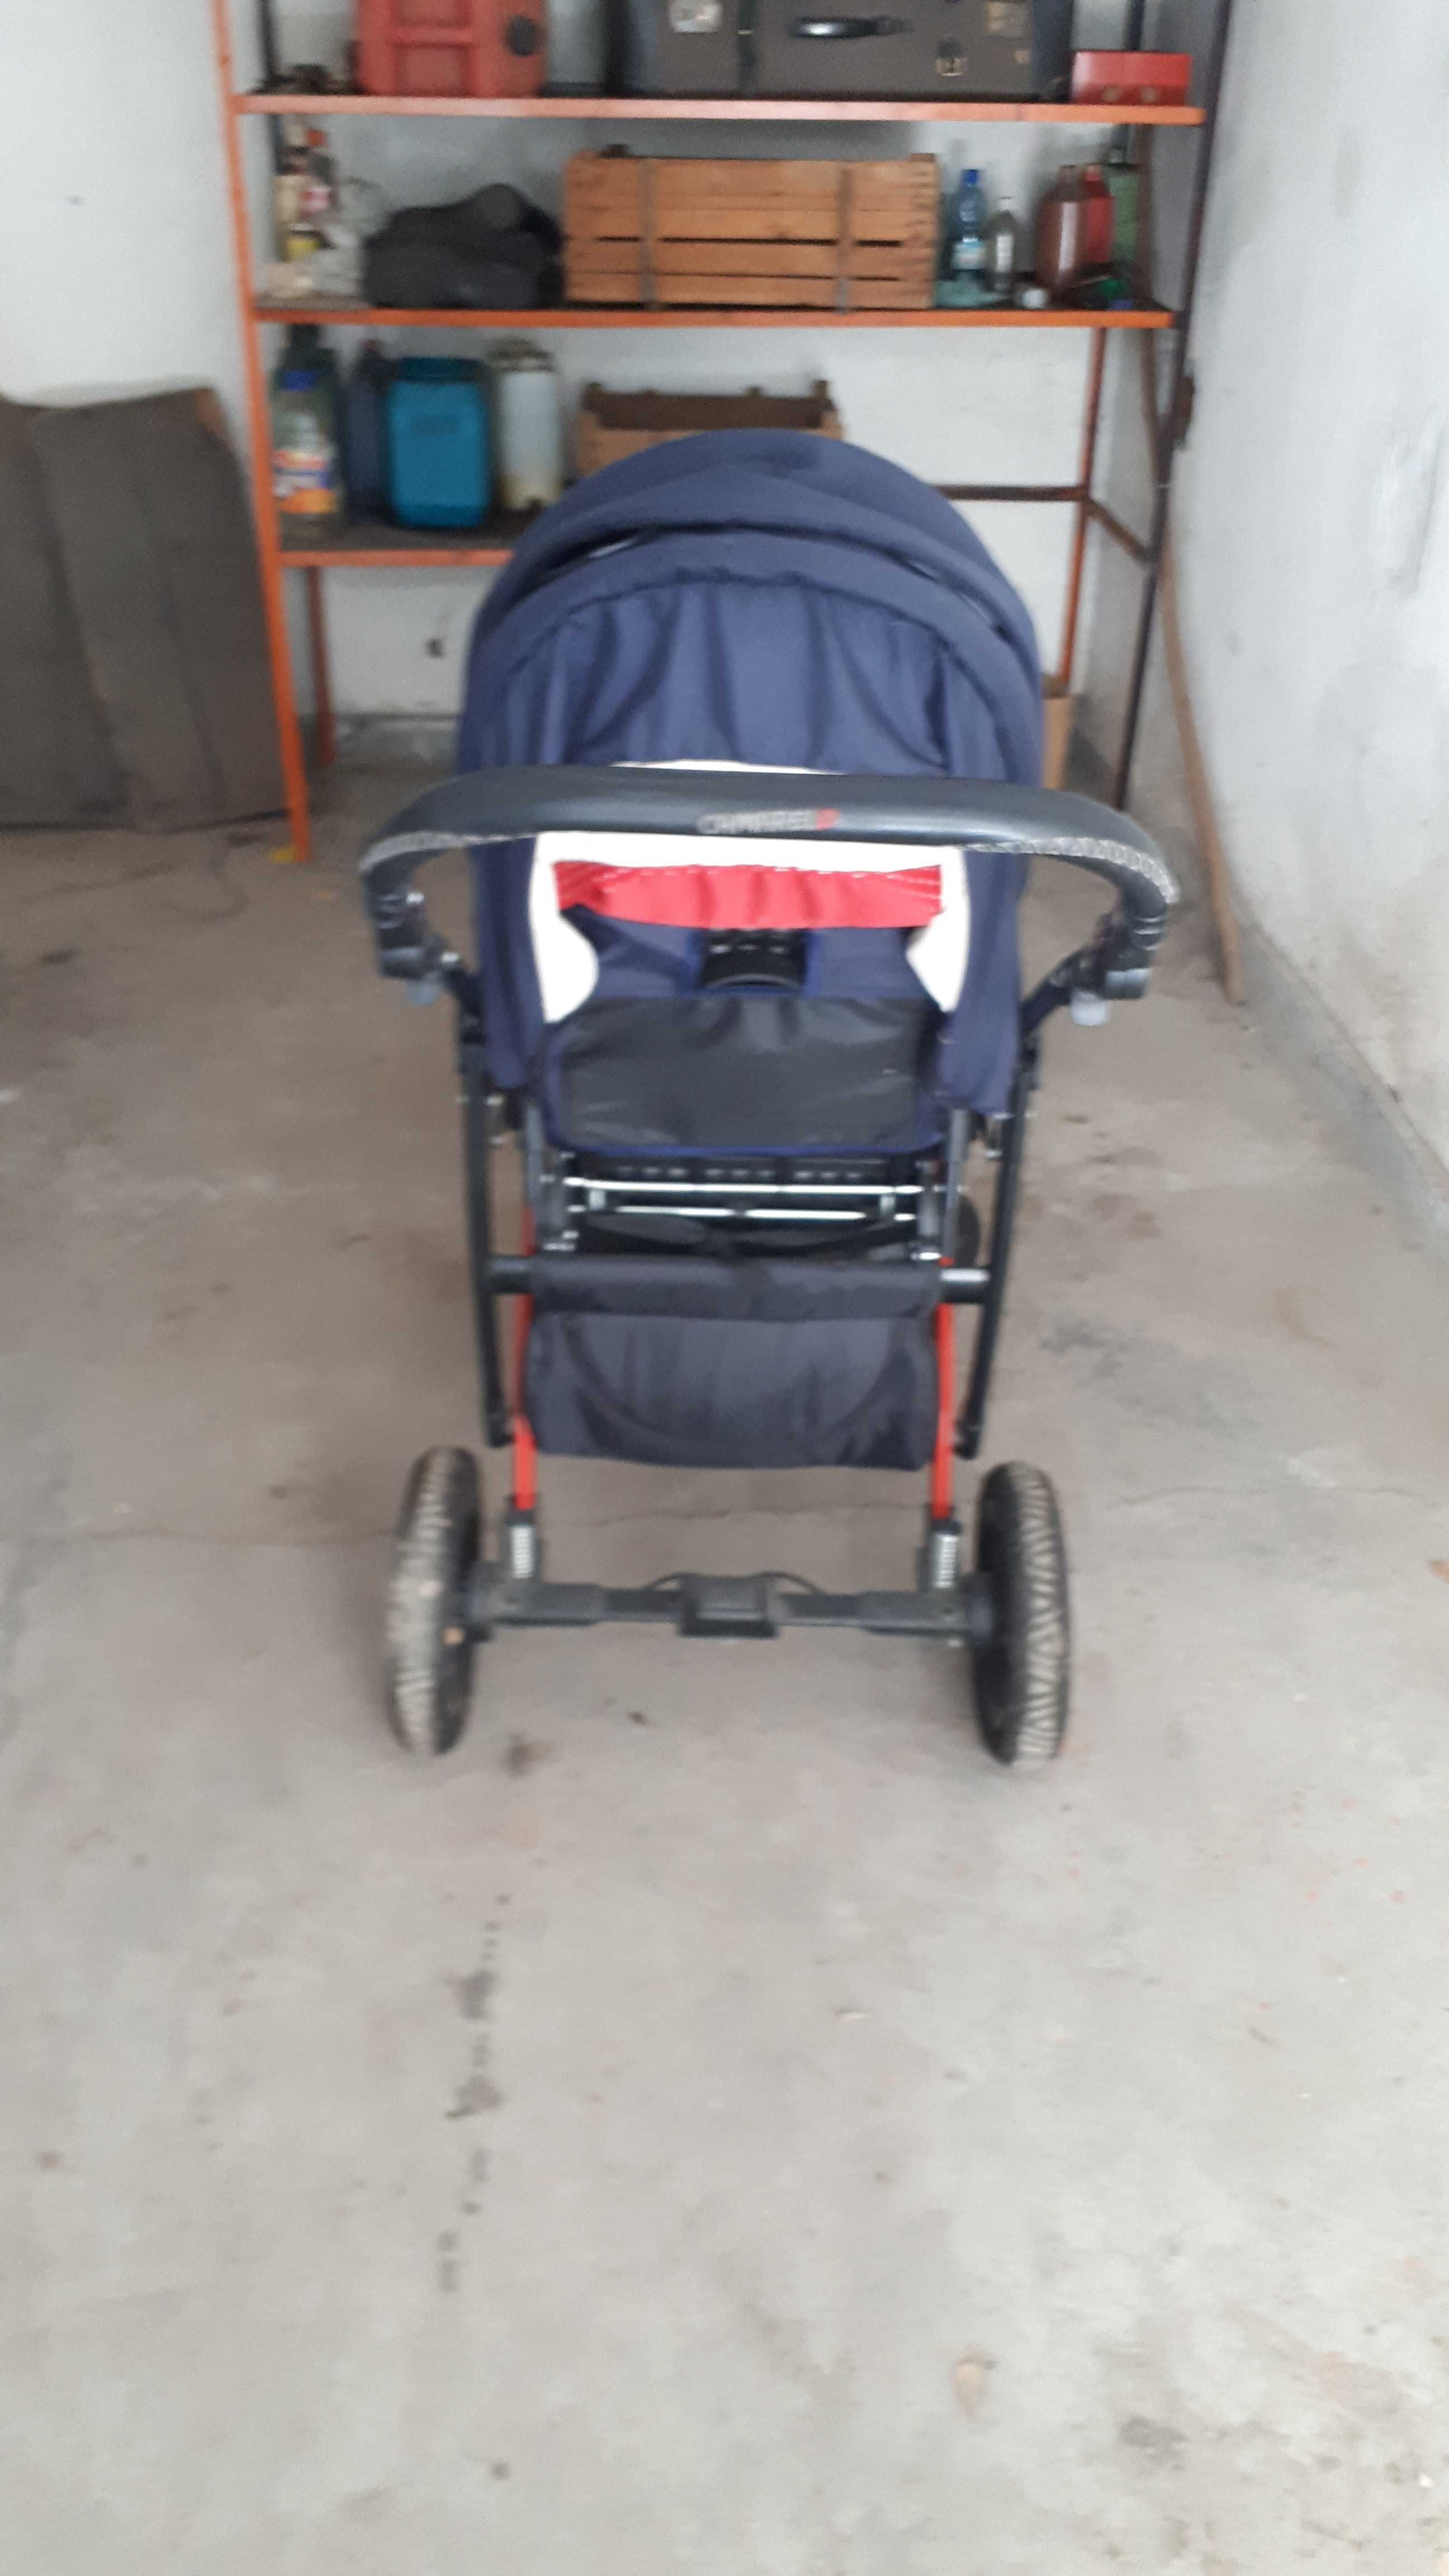 Детска количка "CAMARELO" и столче за кола "AVIONAUT" с Isofix